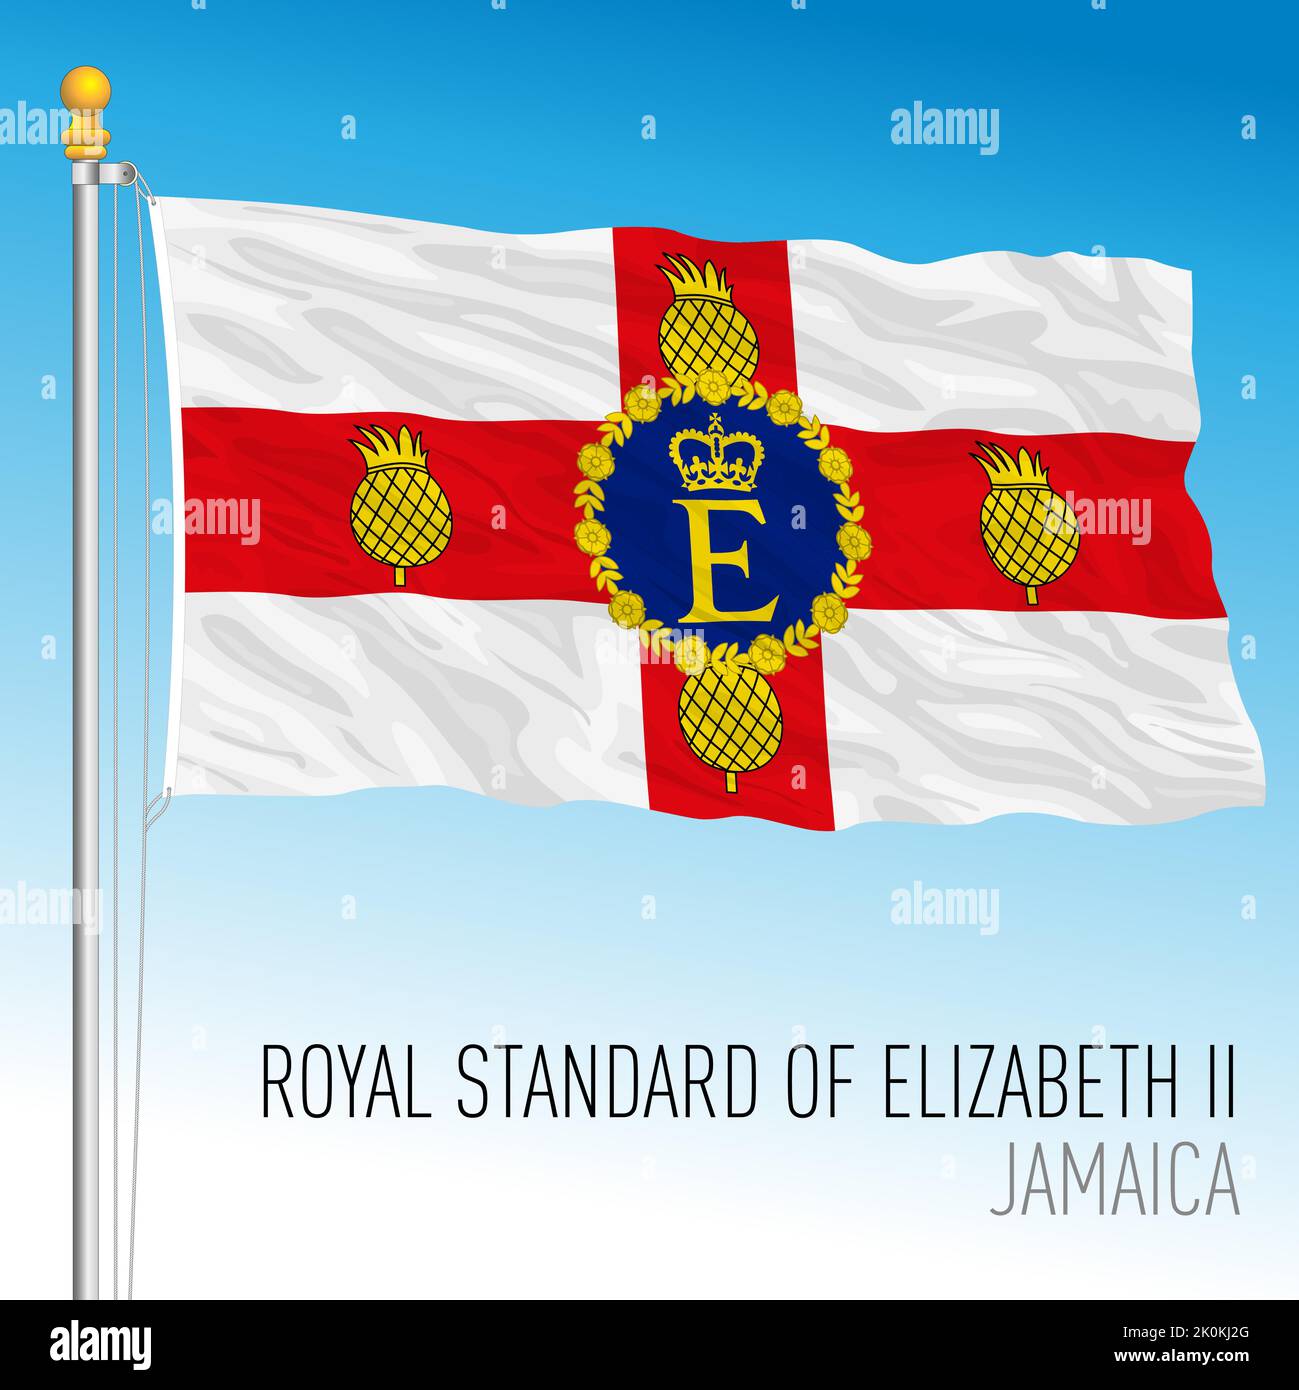 Jamaica, Royal Standard of Queen Elizabeth II, vector illustration Stock Vector